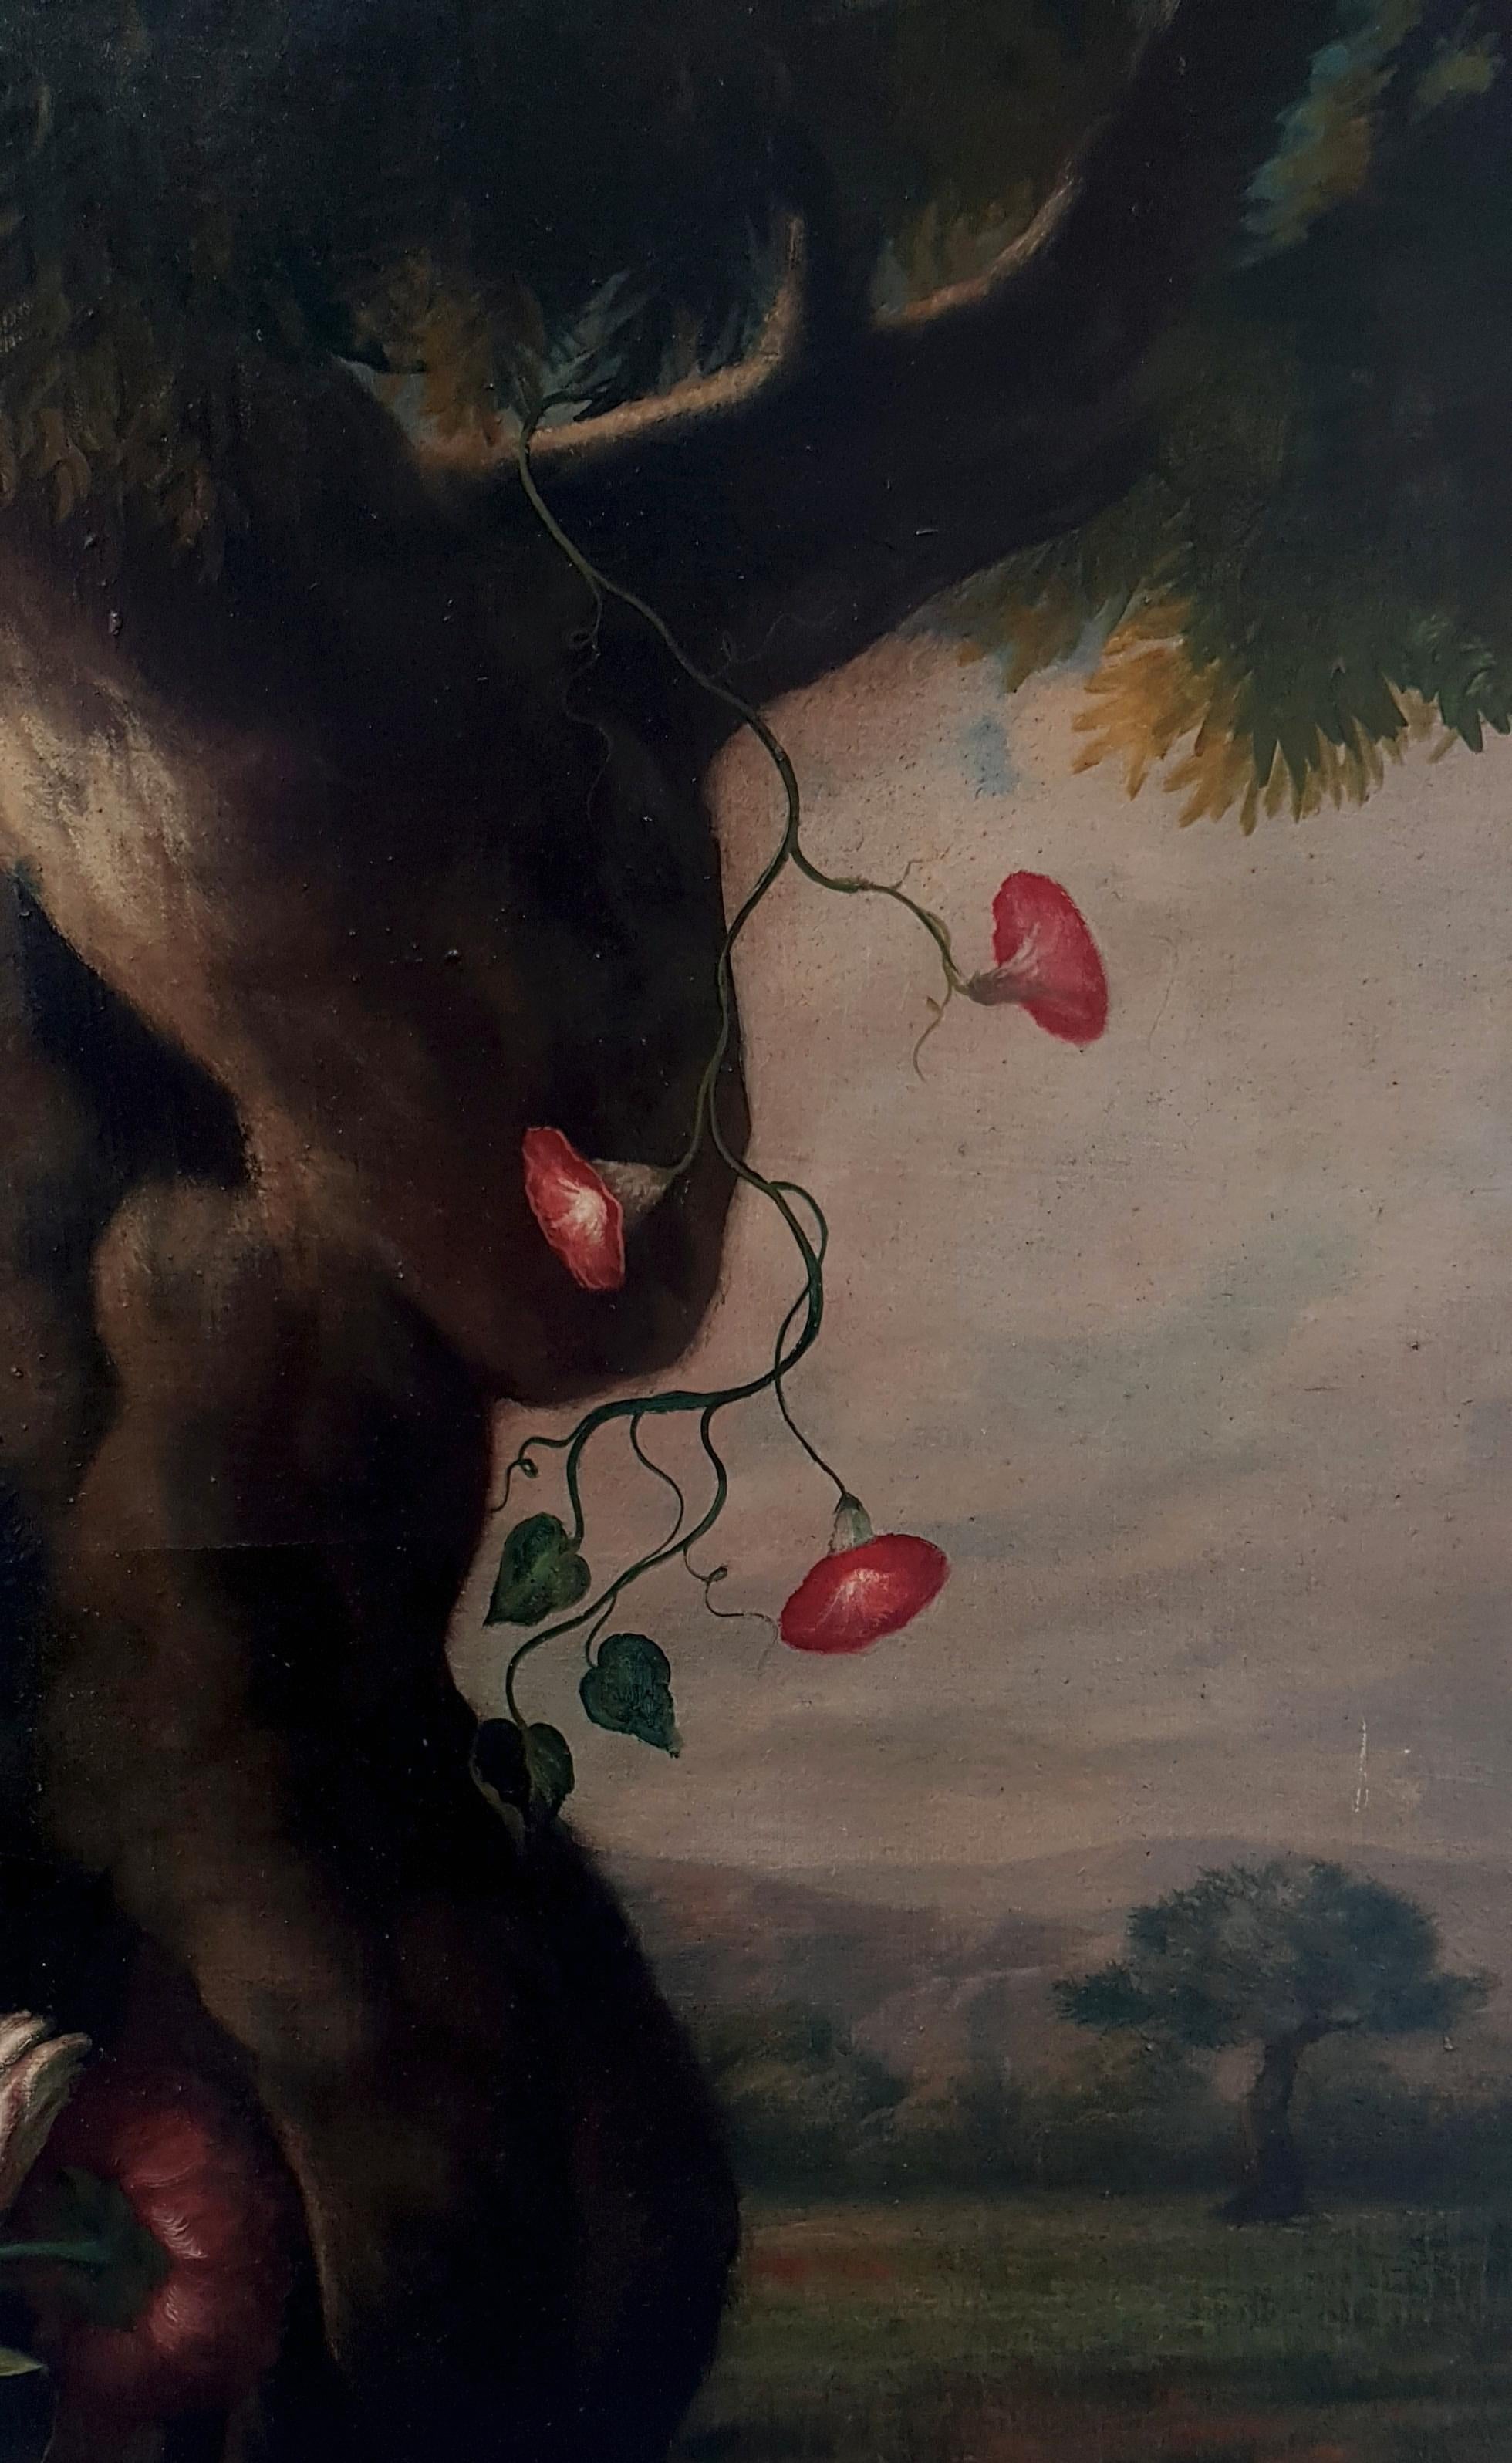 Blühender Baum - Öl auf Leinwand cm.100x80 von Giovanni Bonetti, Italien, 2002

Giovanni Bonetti, der unbestrittene Künstler des Stillebens, zeigt in dieser kostbaren Blumenkomposition seine Originalität und sein ausgeprägtes Können. 
Der nüchterne